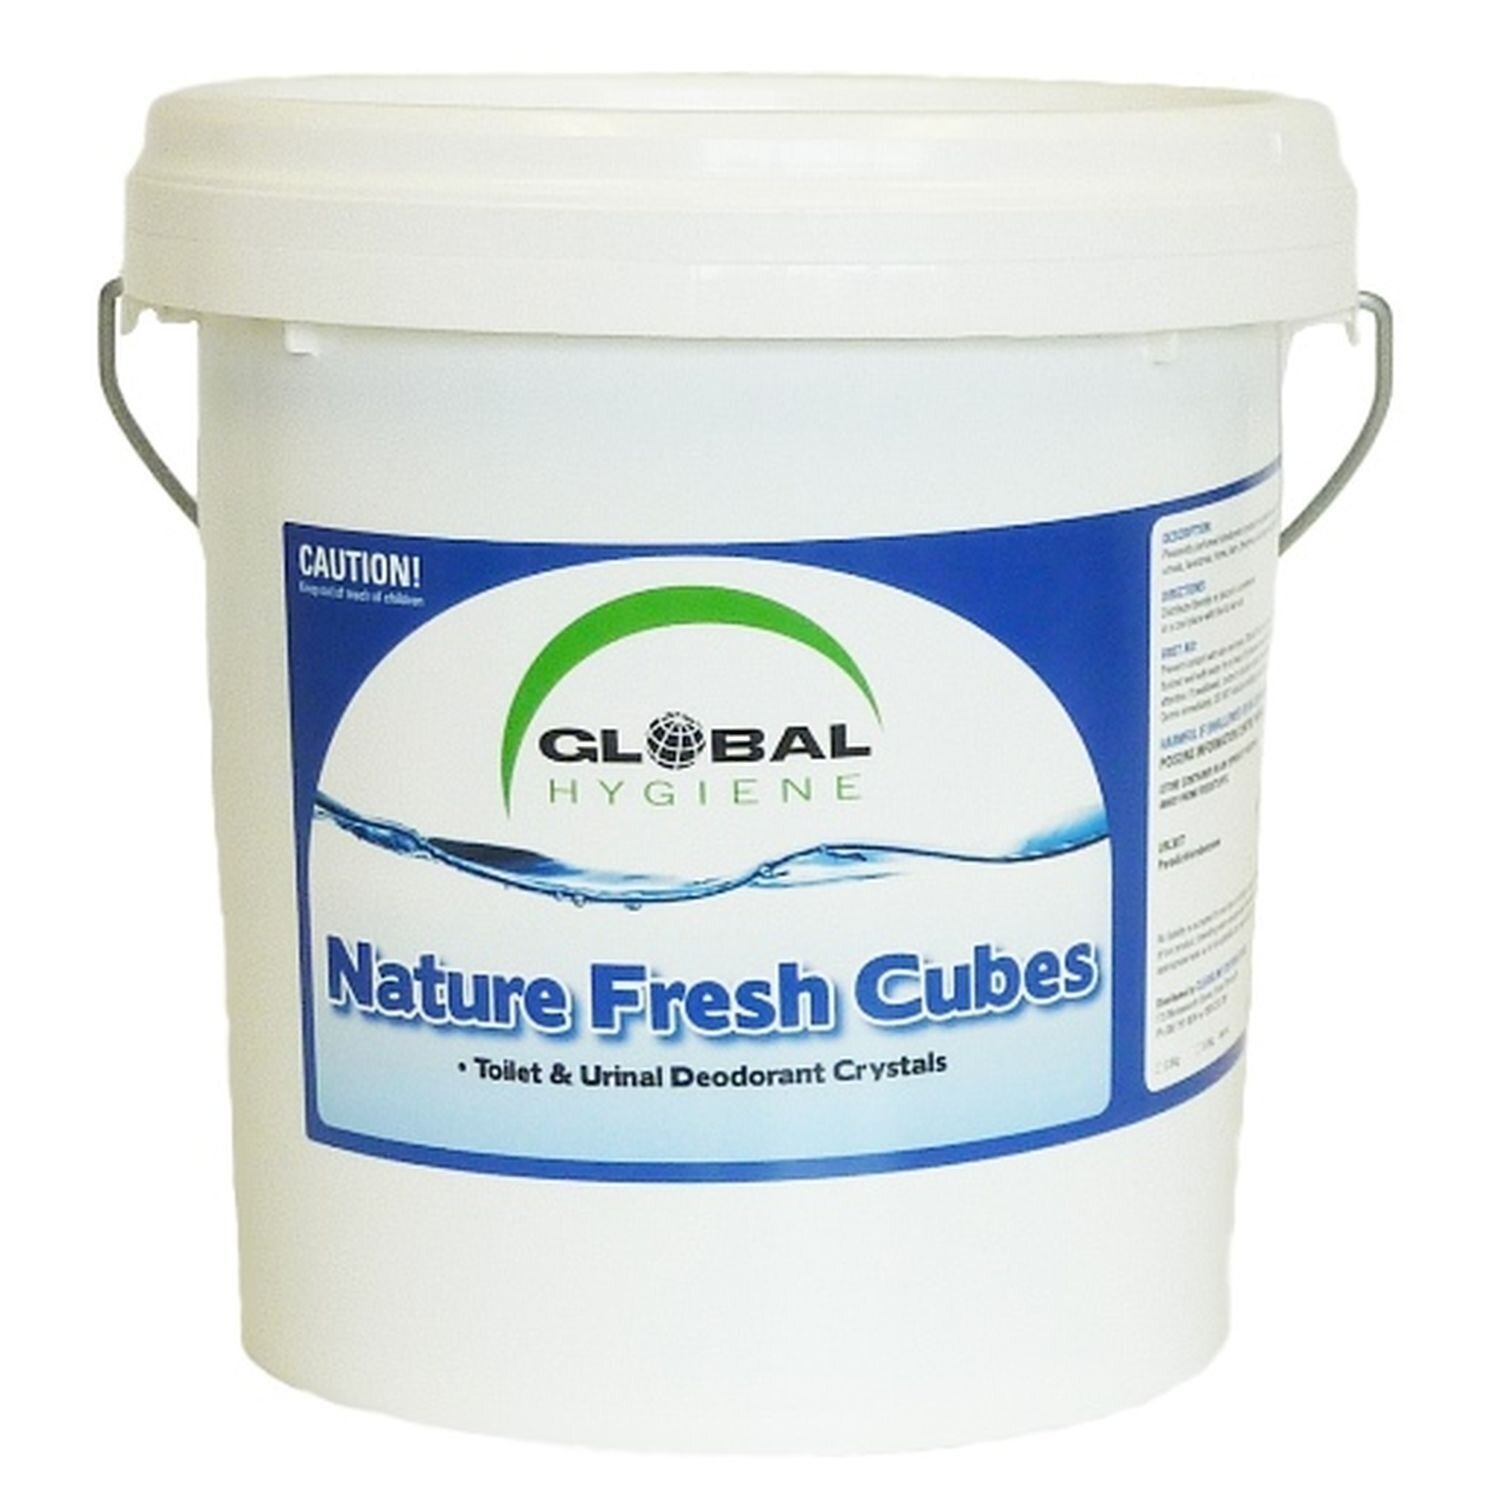 Global Nature Fresh Urinal Cubes